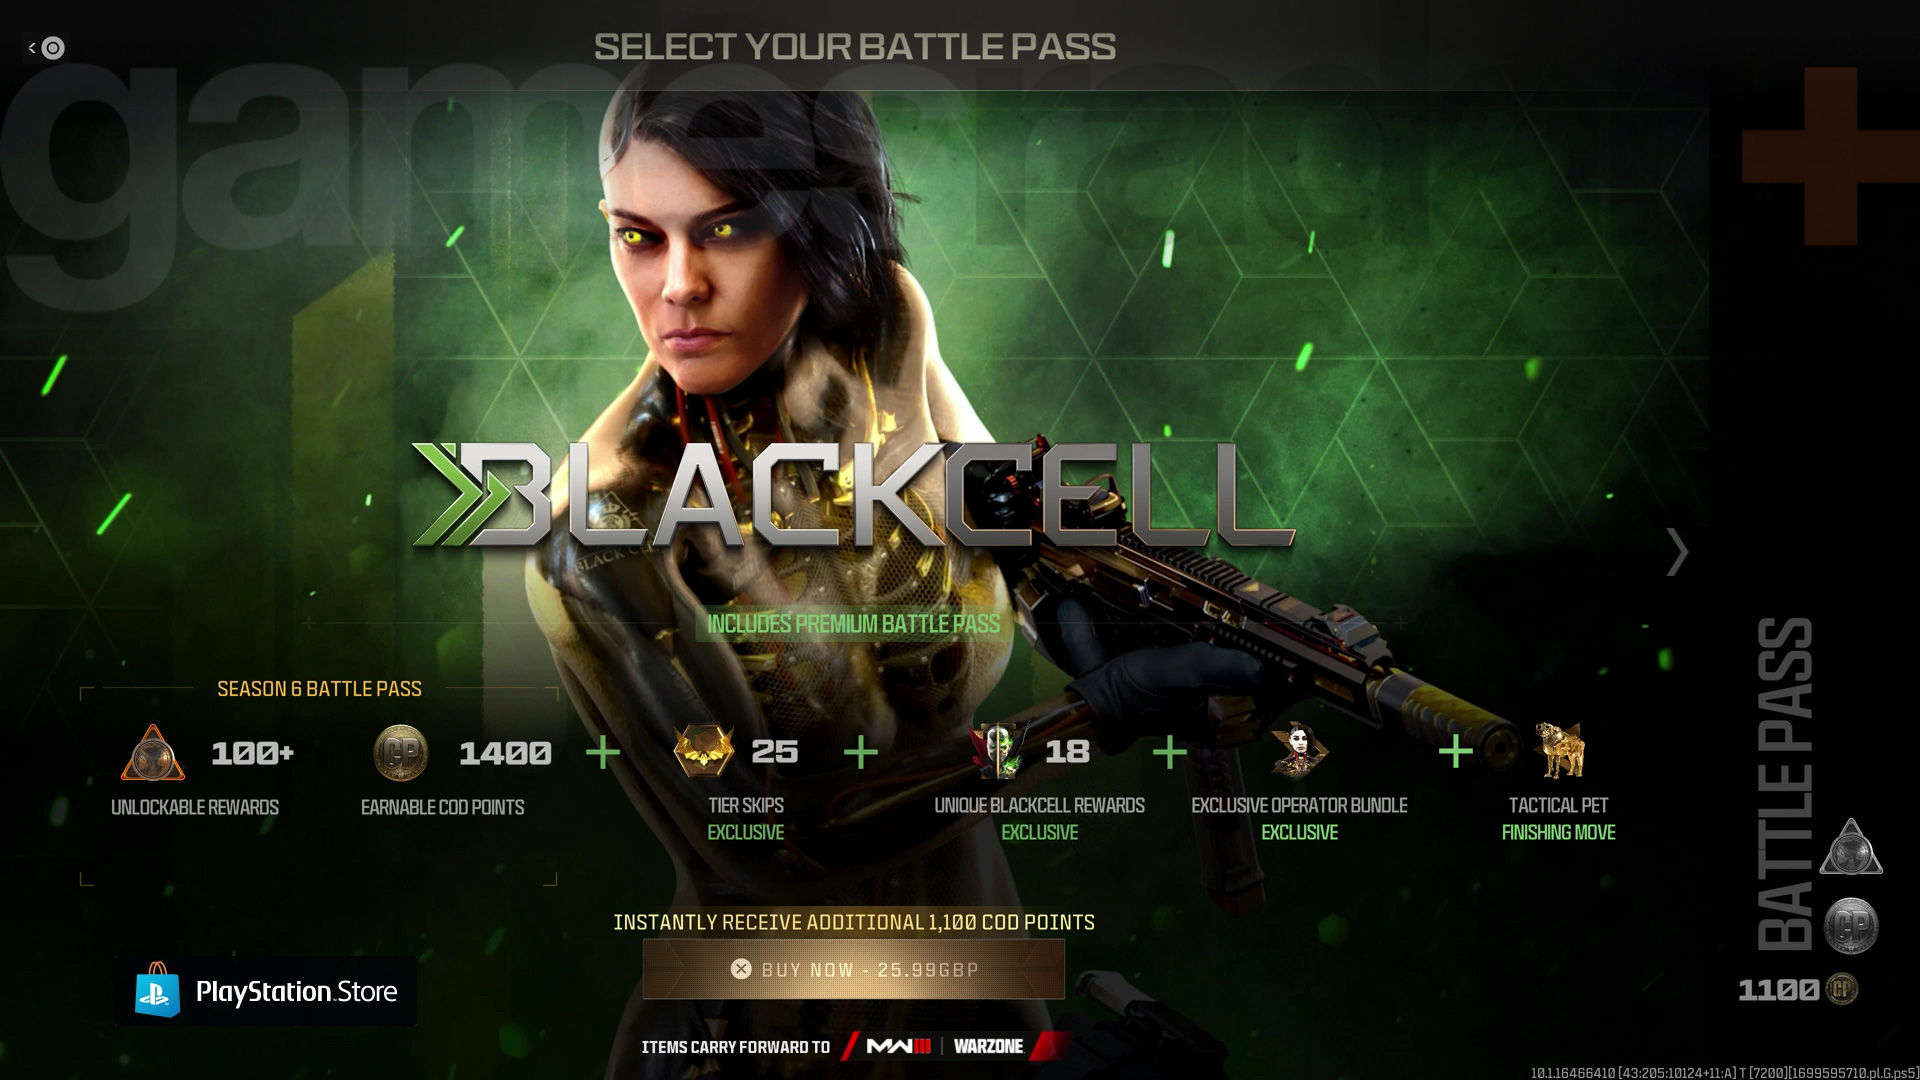 BlackCell Modern Warfare 3 Battle Pass sesong 1 for Modern Warfare 3